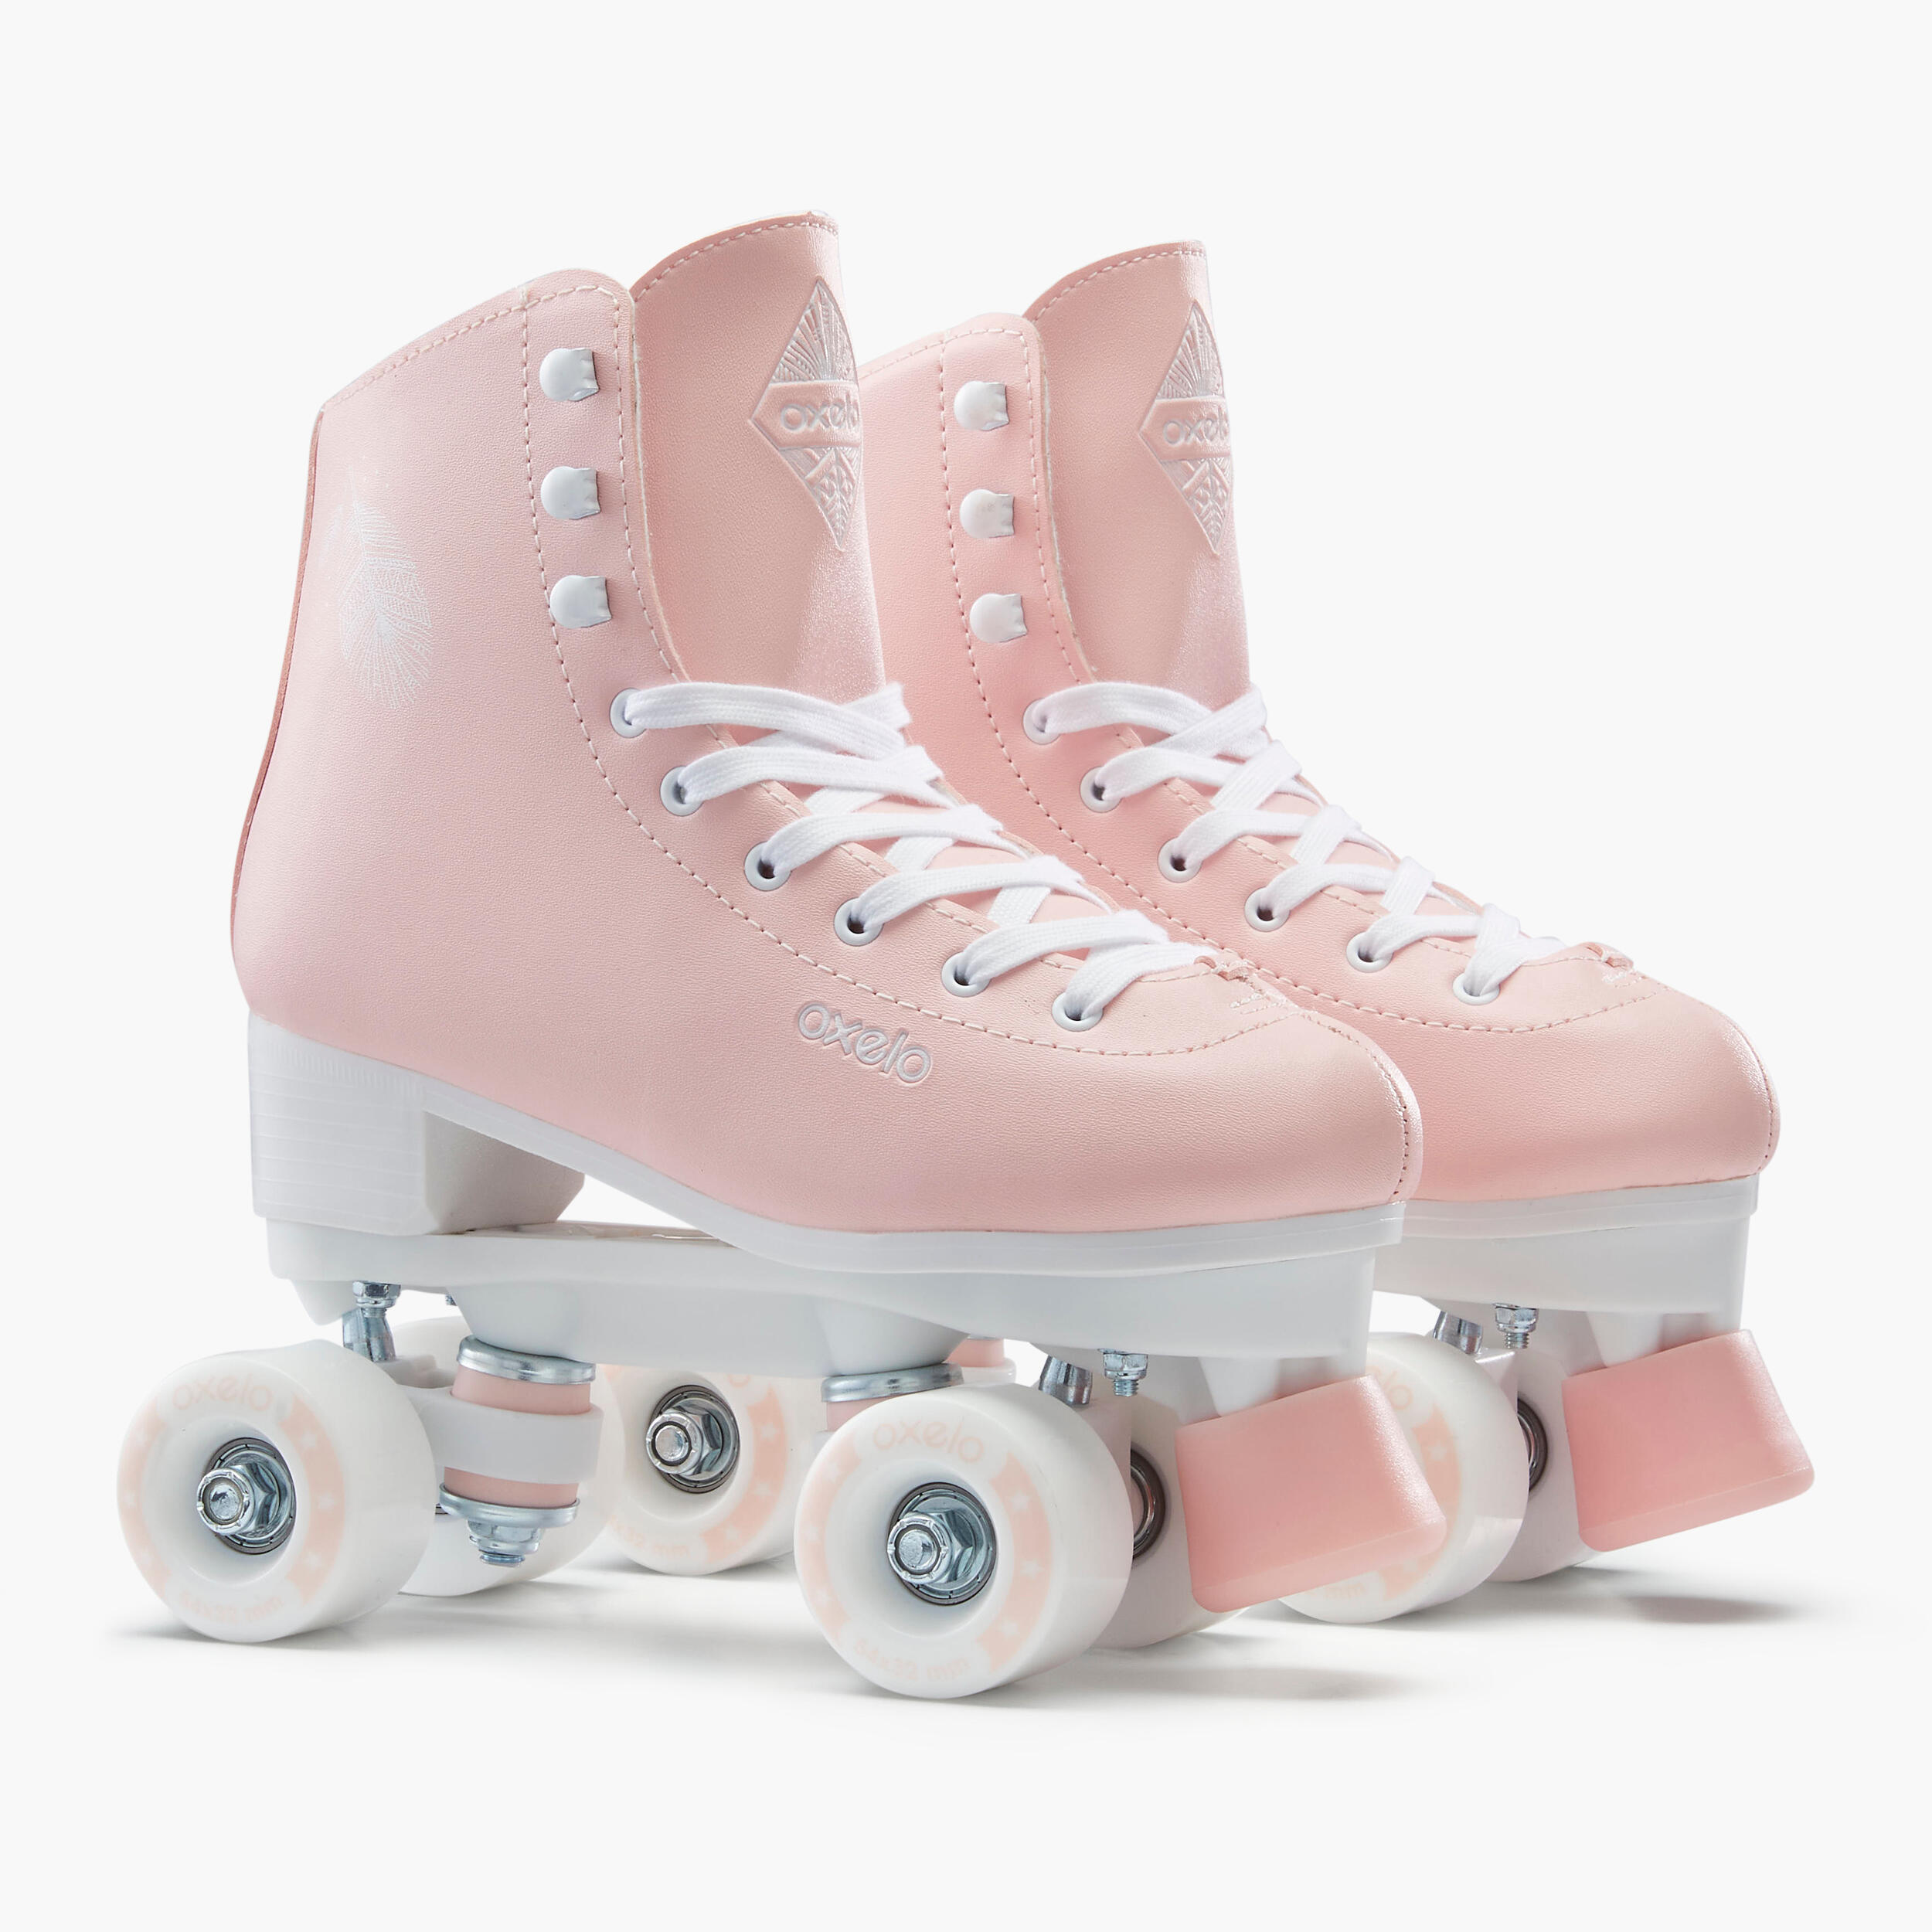 Kids' and Adult Artistic Roller Skating Quad Skates 100 - Pink 6/15